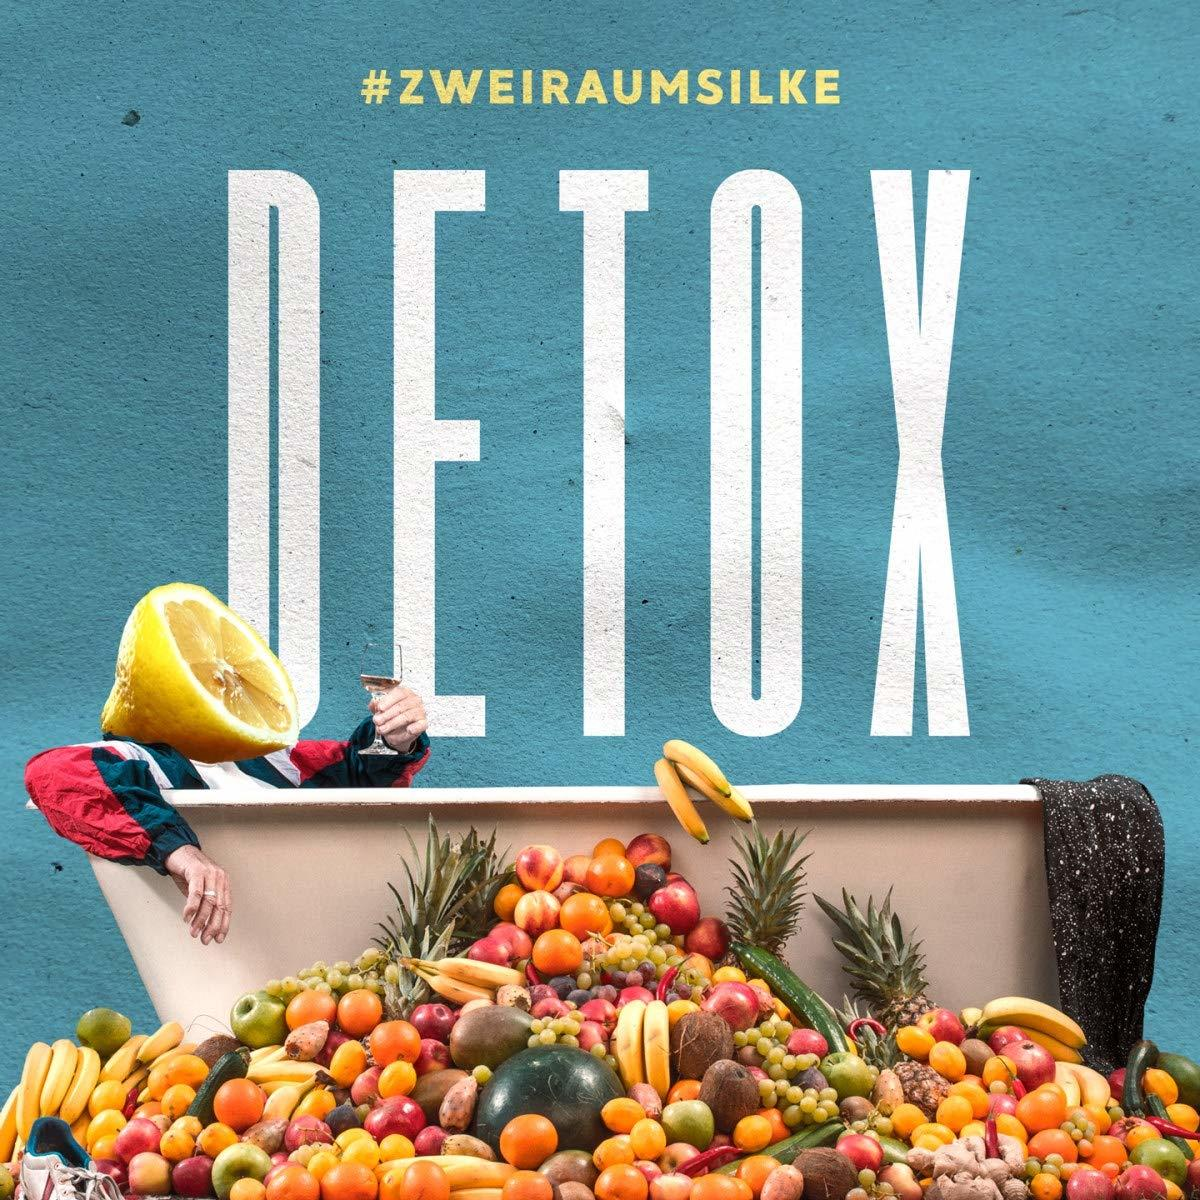 Zweiraumsilke - (CD) - Detox